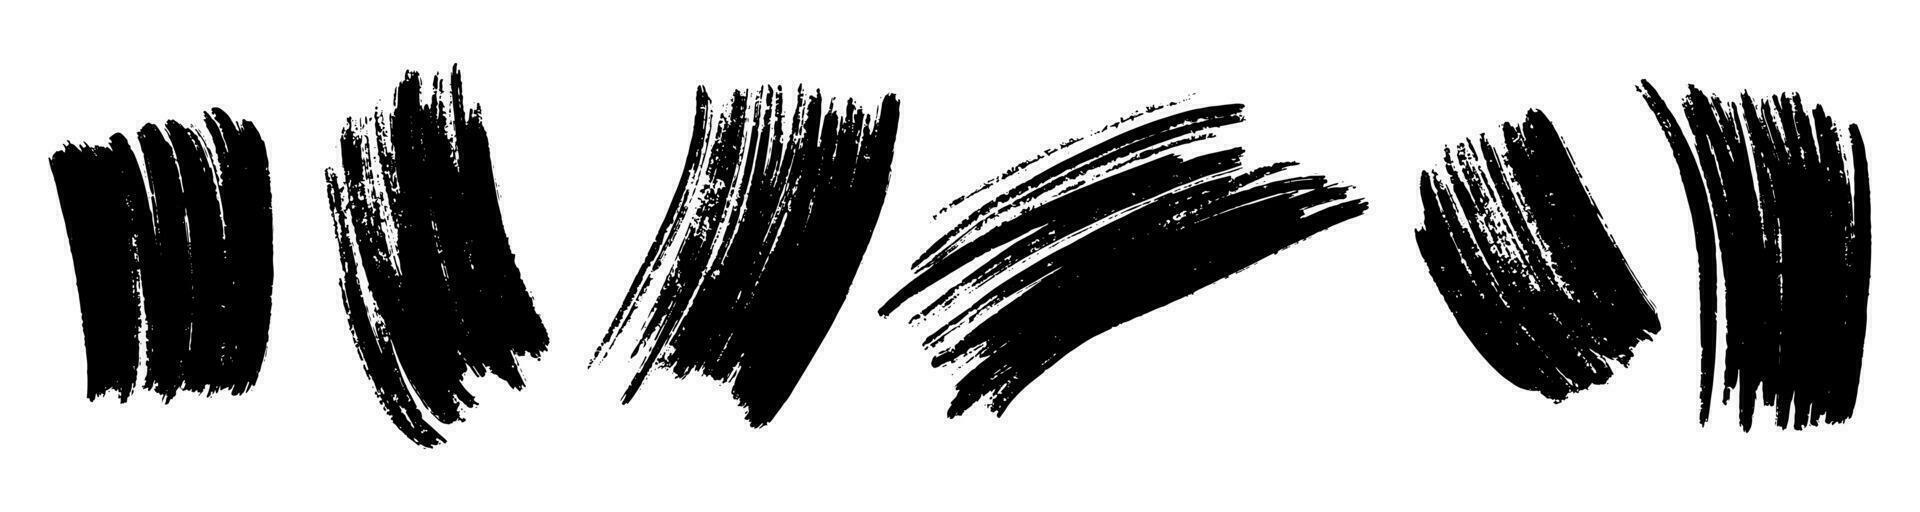 uppsättning av bläck borsta slag, borstar, rader, svart måla, grungy. hand dragen grafisk element isolerat på vit bakgrund. vektor